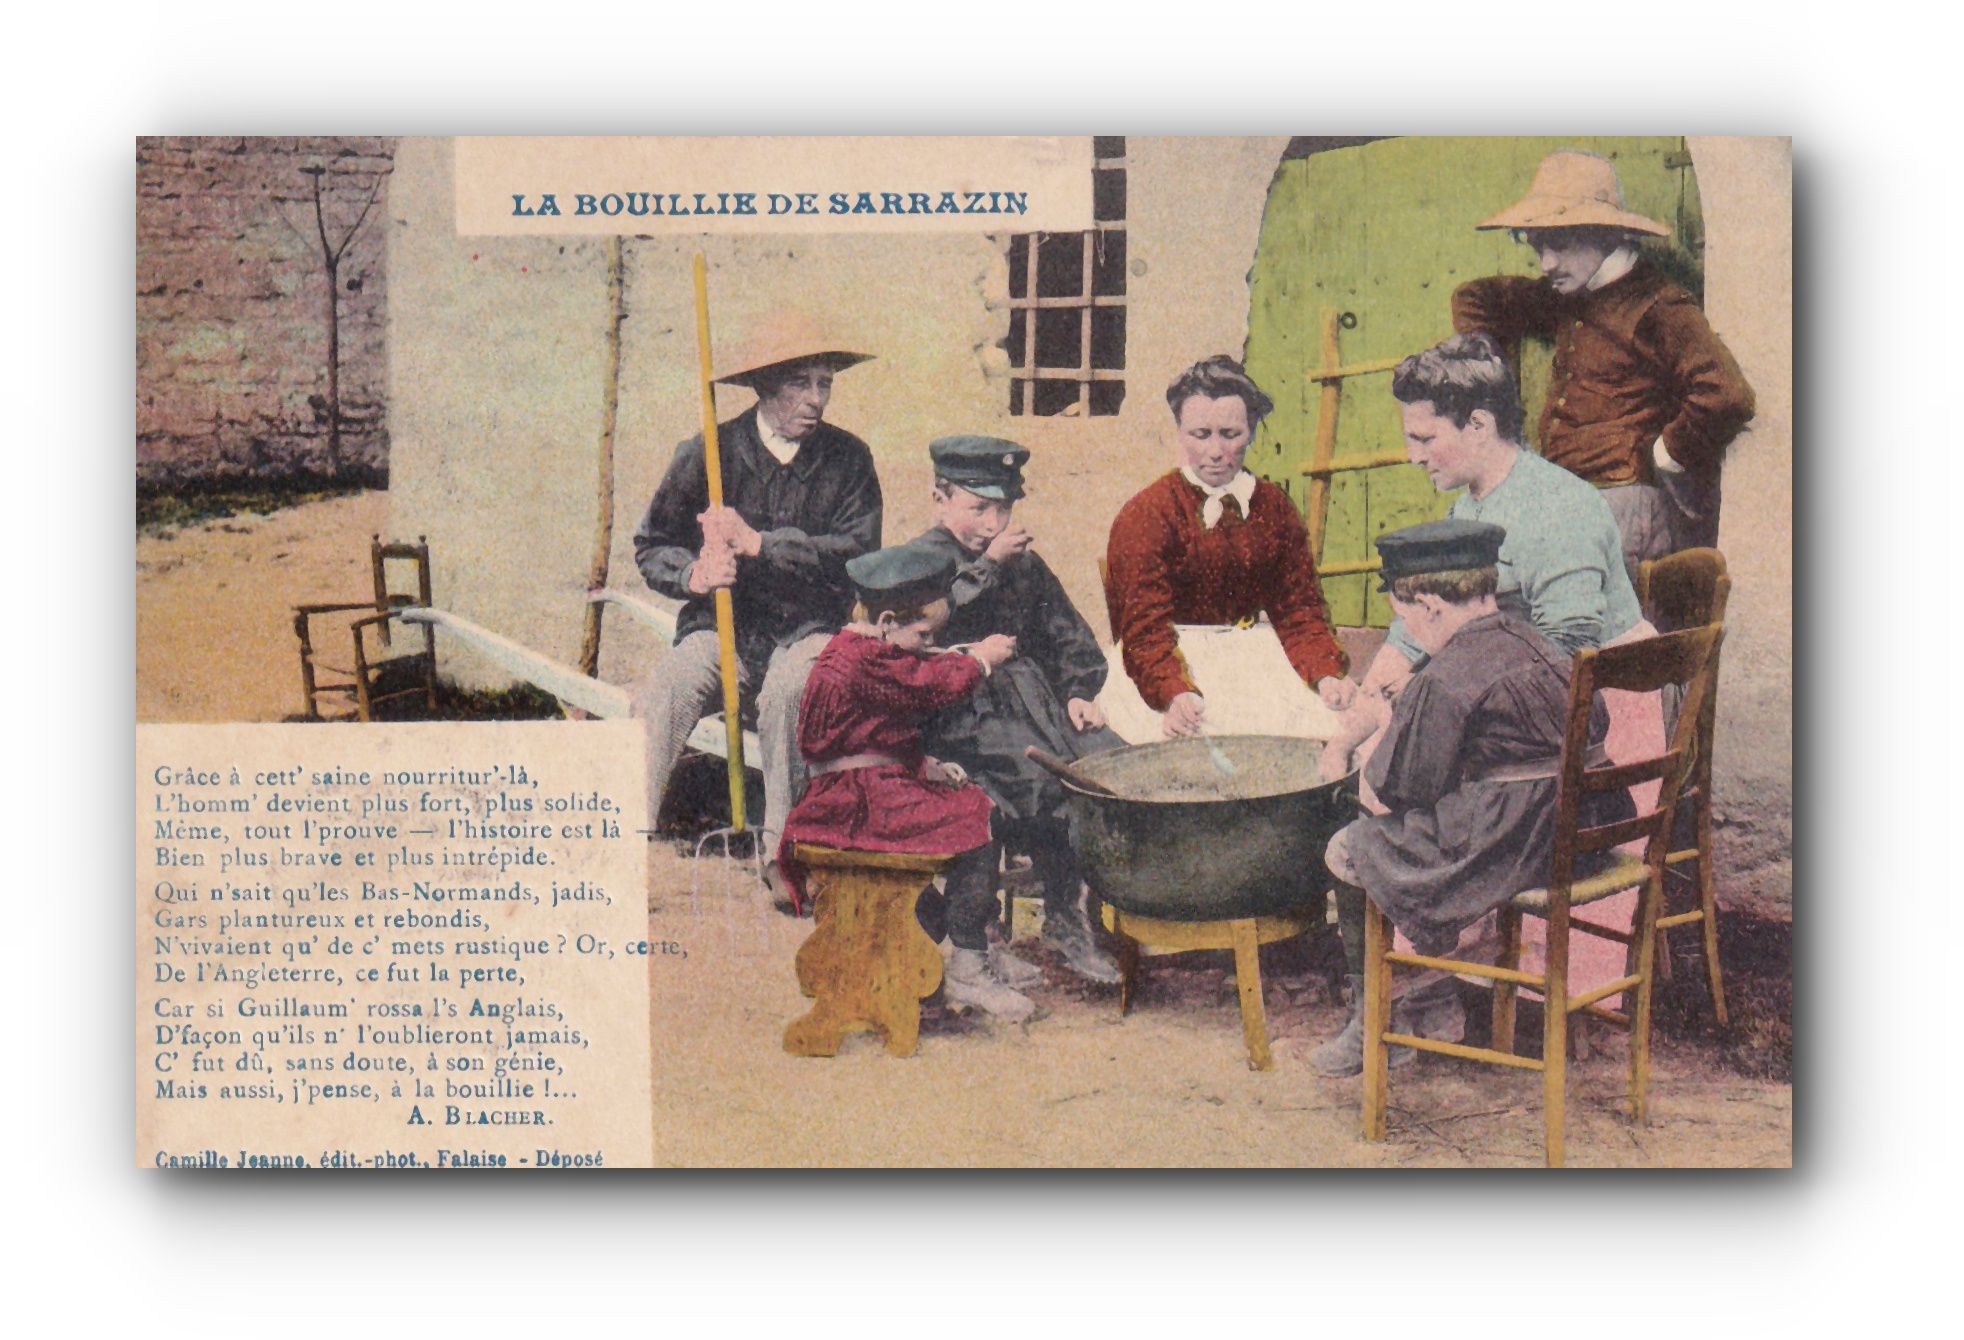 - La bouillie de sarrazin - 26.02.1912 -